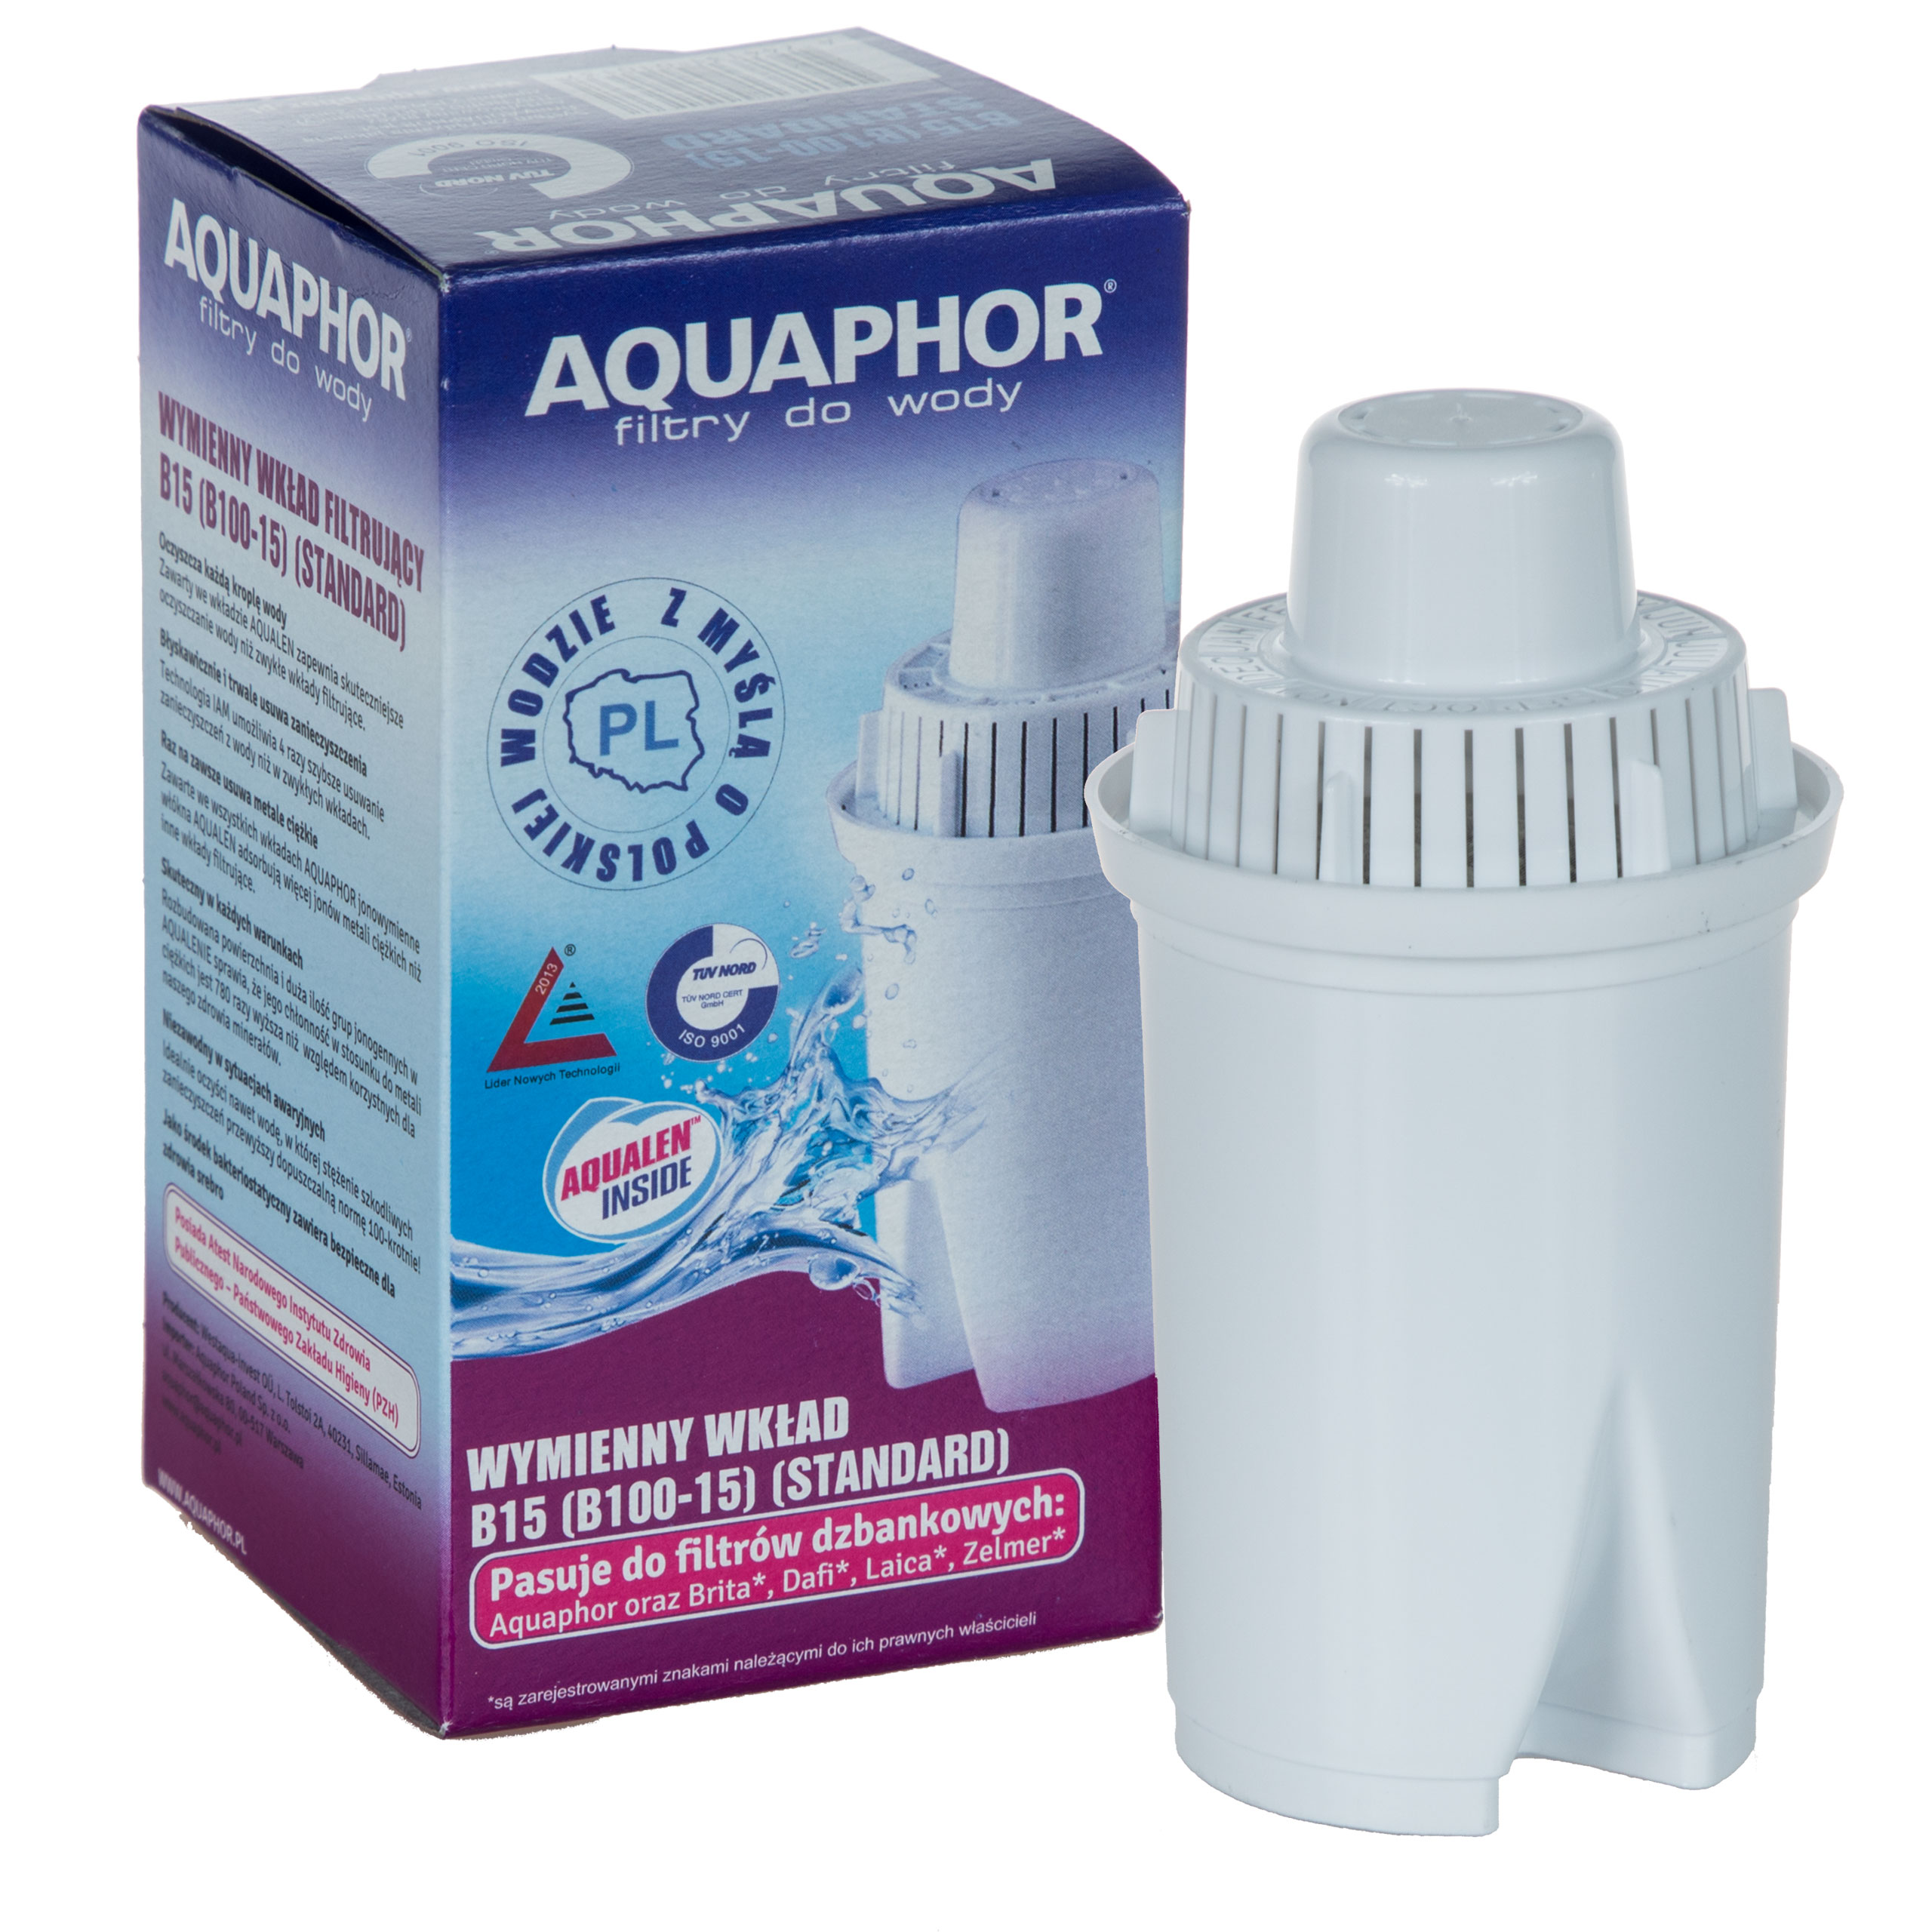 Купить картридж для фильтра воды кувшин. Фильтр Аквафор в 100-15. Фильтр для воды Аквафор в100-15. Aquaphor Filter Cartridge b15 (b100-15). Фильтр Аквафор 100.